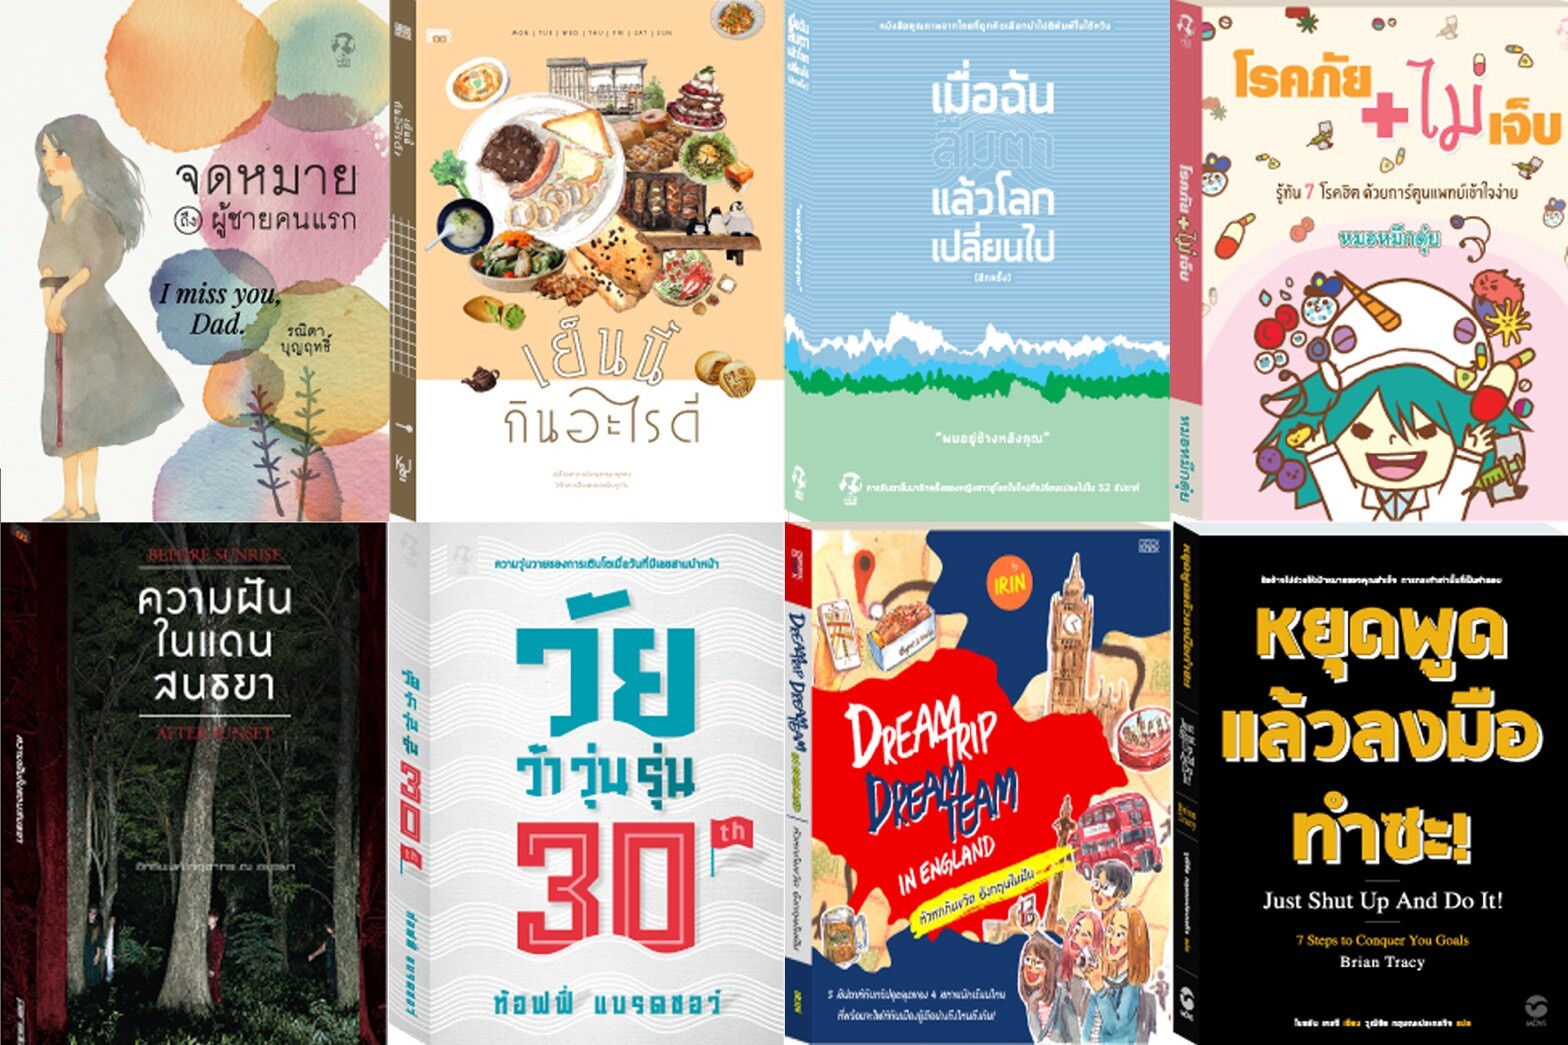 เปิดคลังหนังสือ “สำนักพิมพ์ในเครือ โมโน กรุ๊ป” ชวนคนไทยเยียวยาหัวใจด้วยการอ่านหนังสืออยู่บ้าน